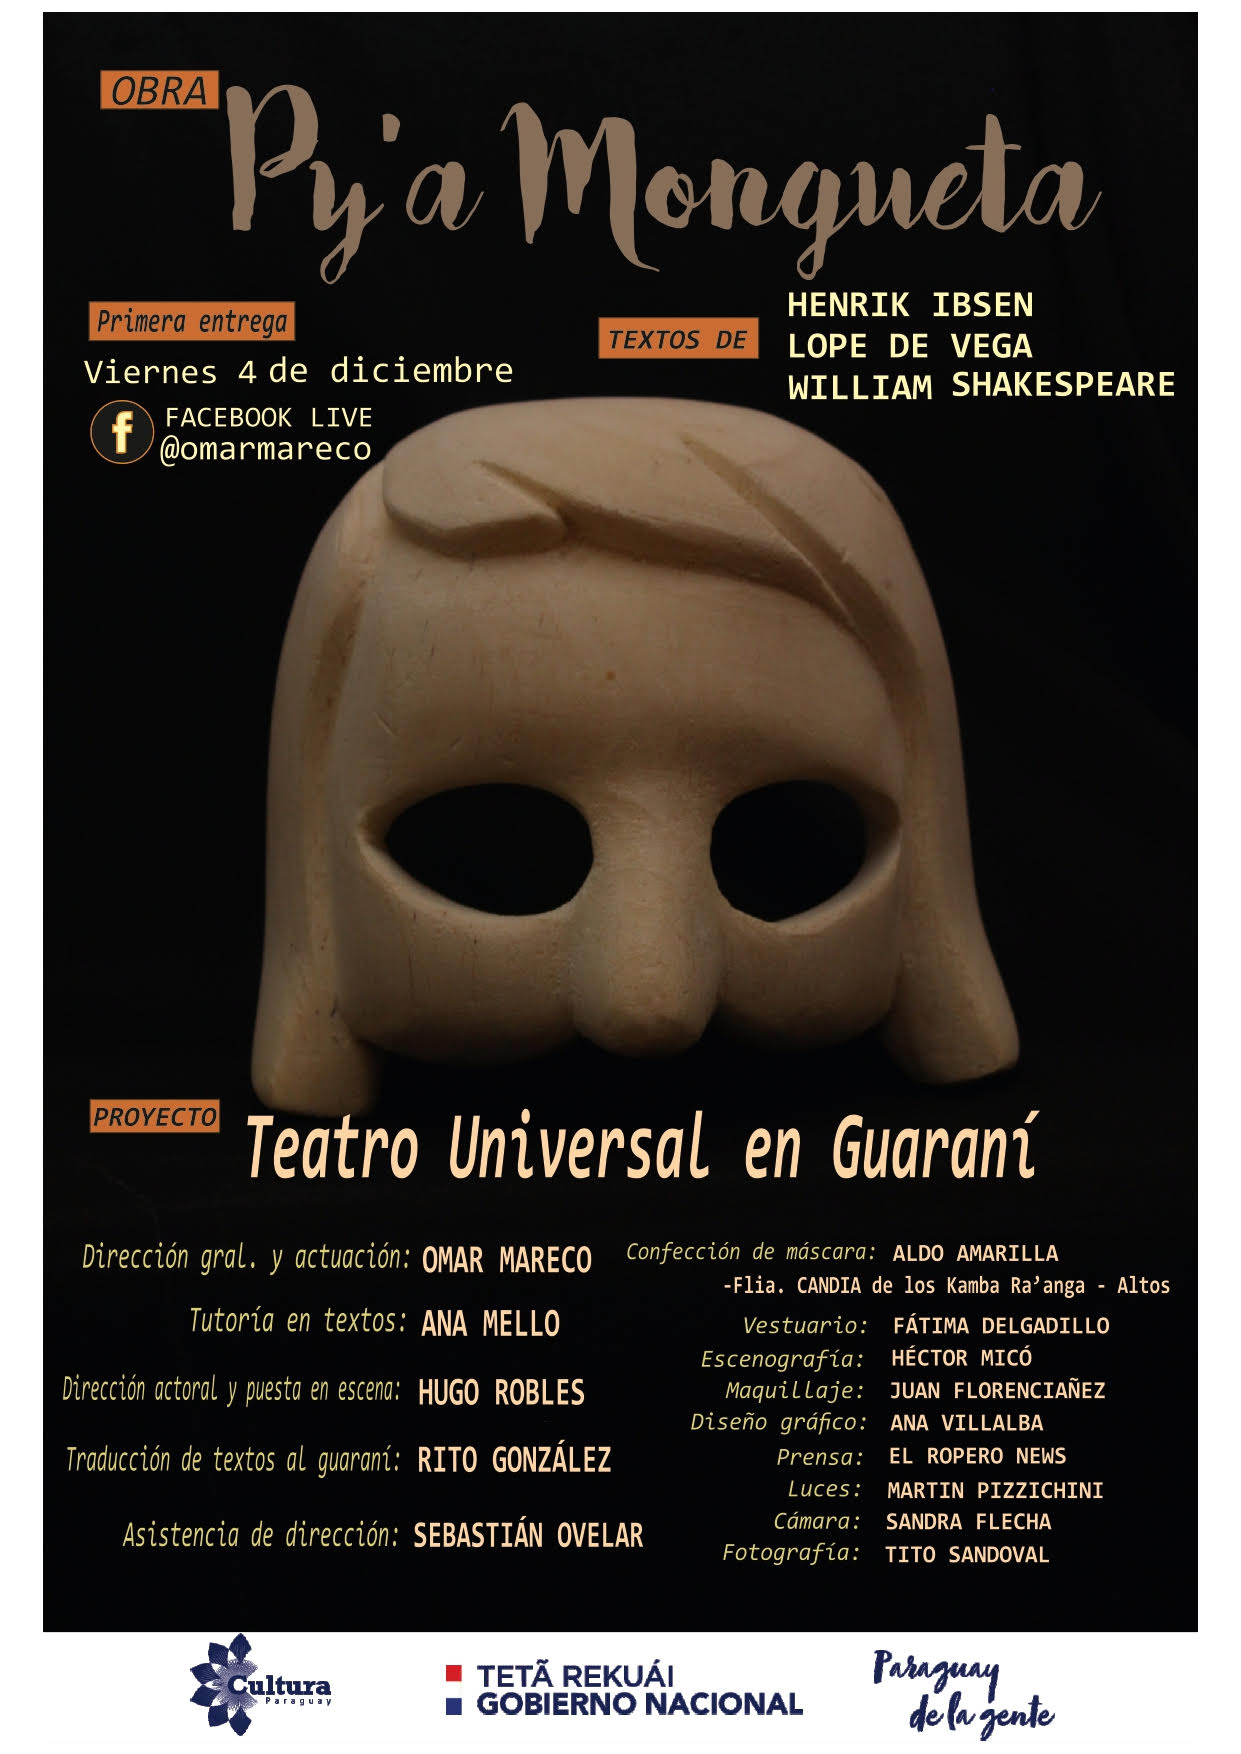 Fondos de Cultura: Teatro Universal en Guaraní estrena este 04 de diciembre imagen